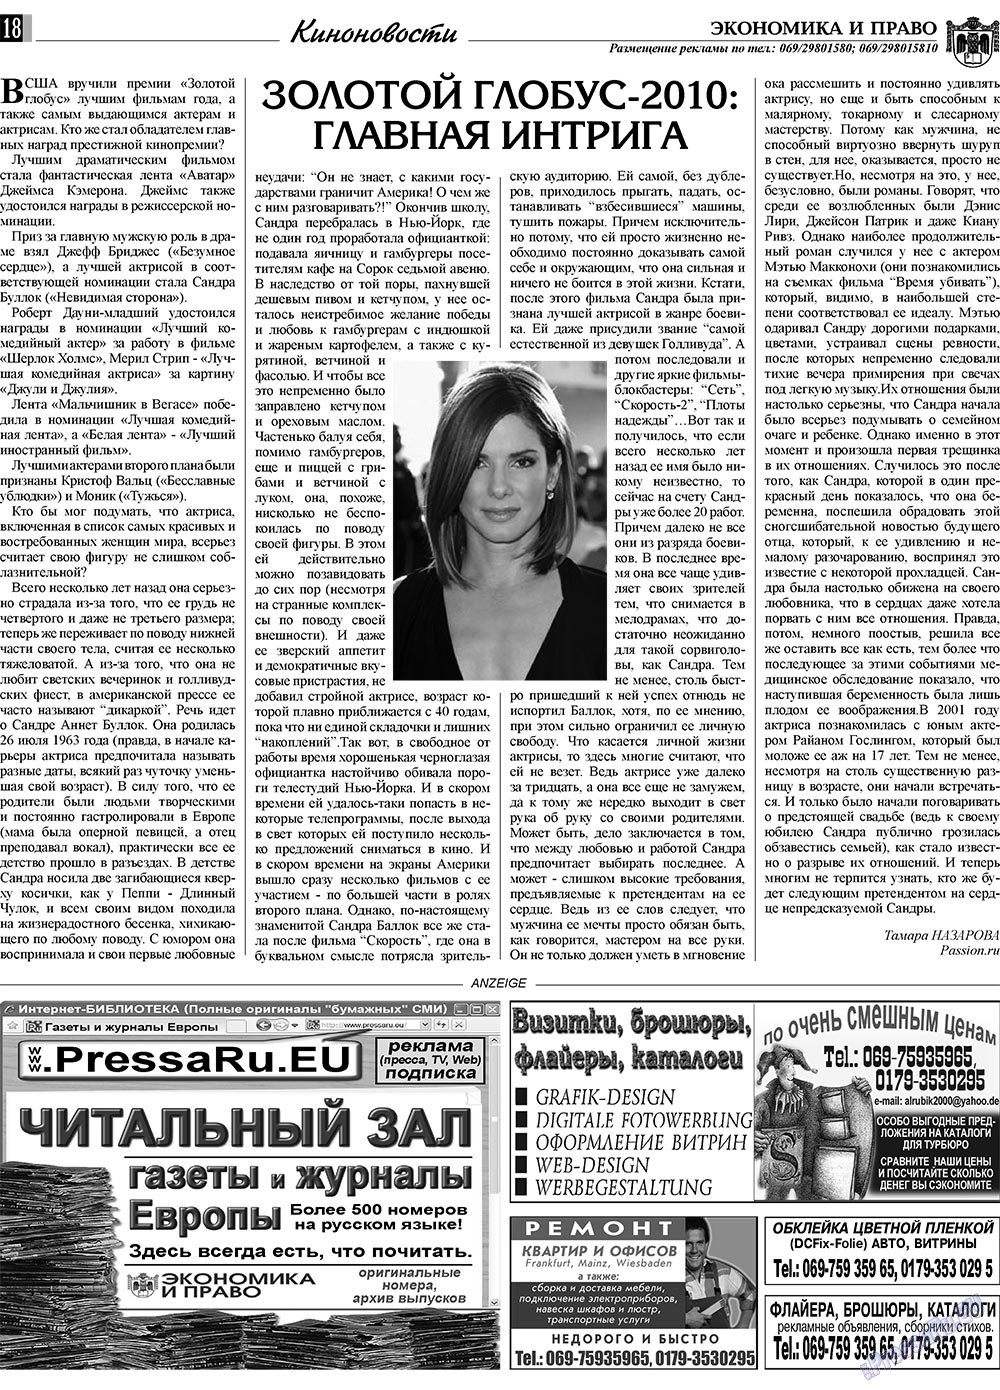 Экономика и право, газета. 2010 №2 стр.18